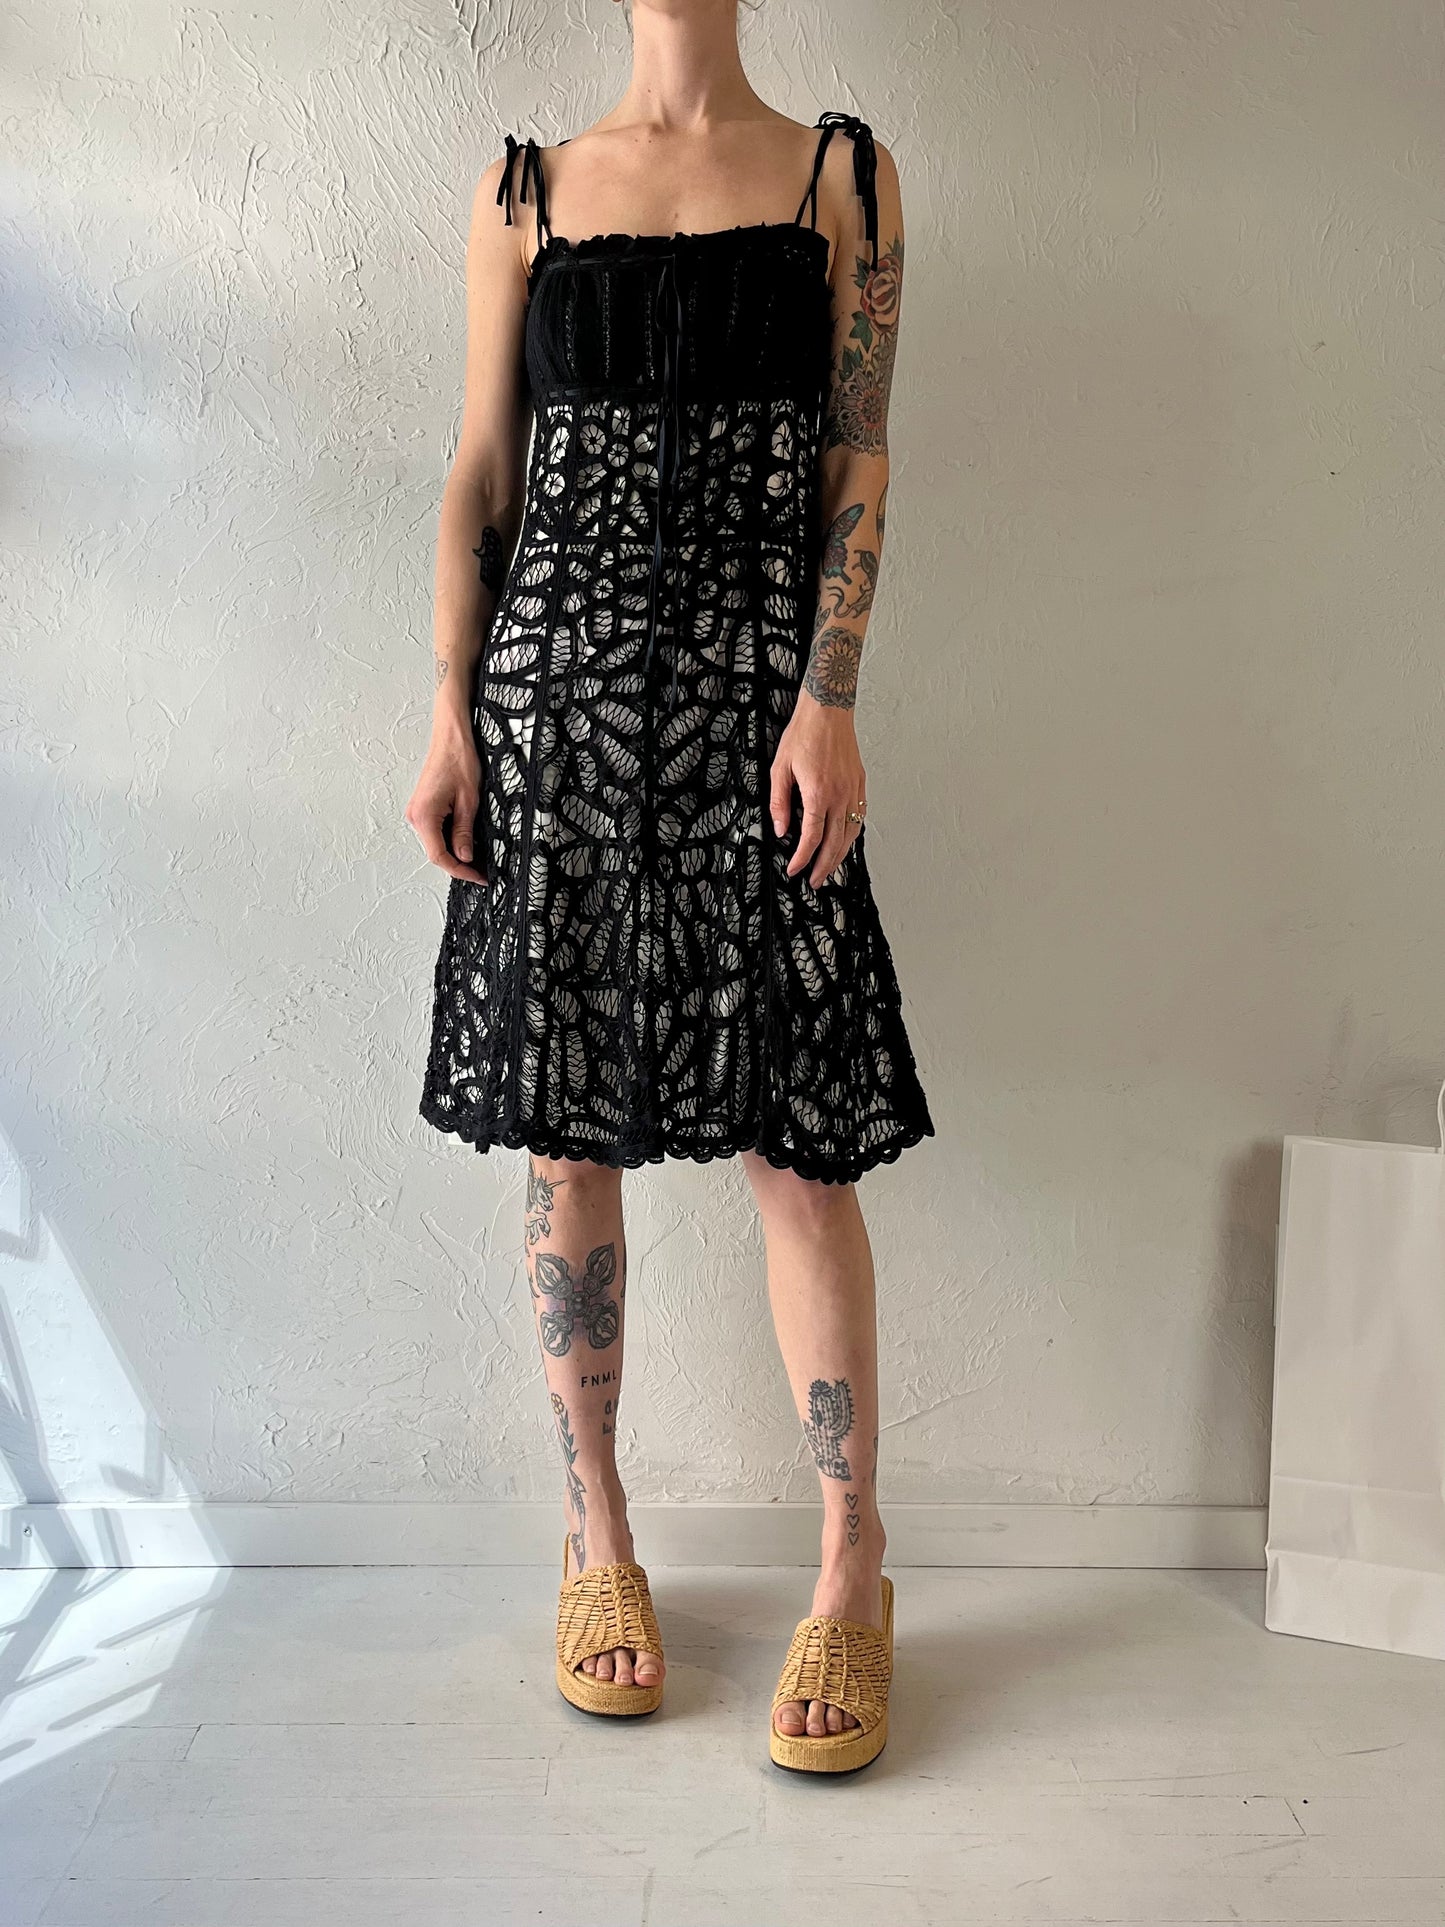 Y2k 'Betsey Johnson' Dress / Medium